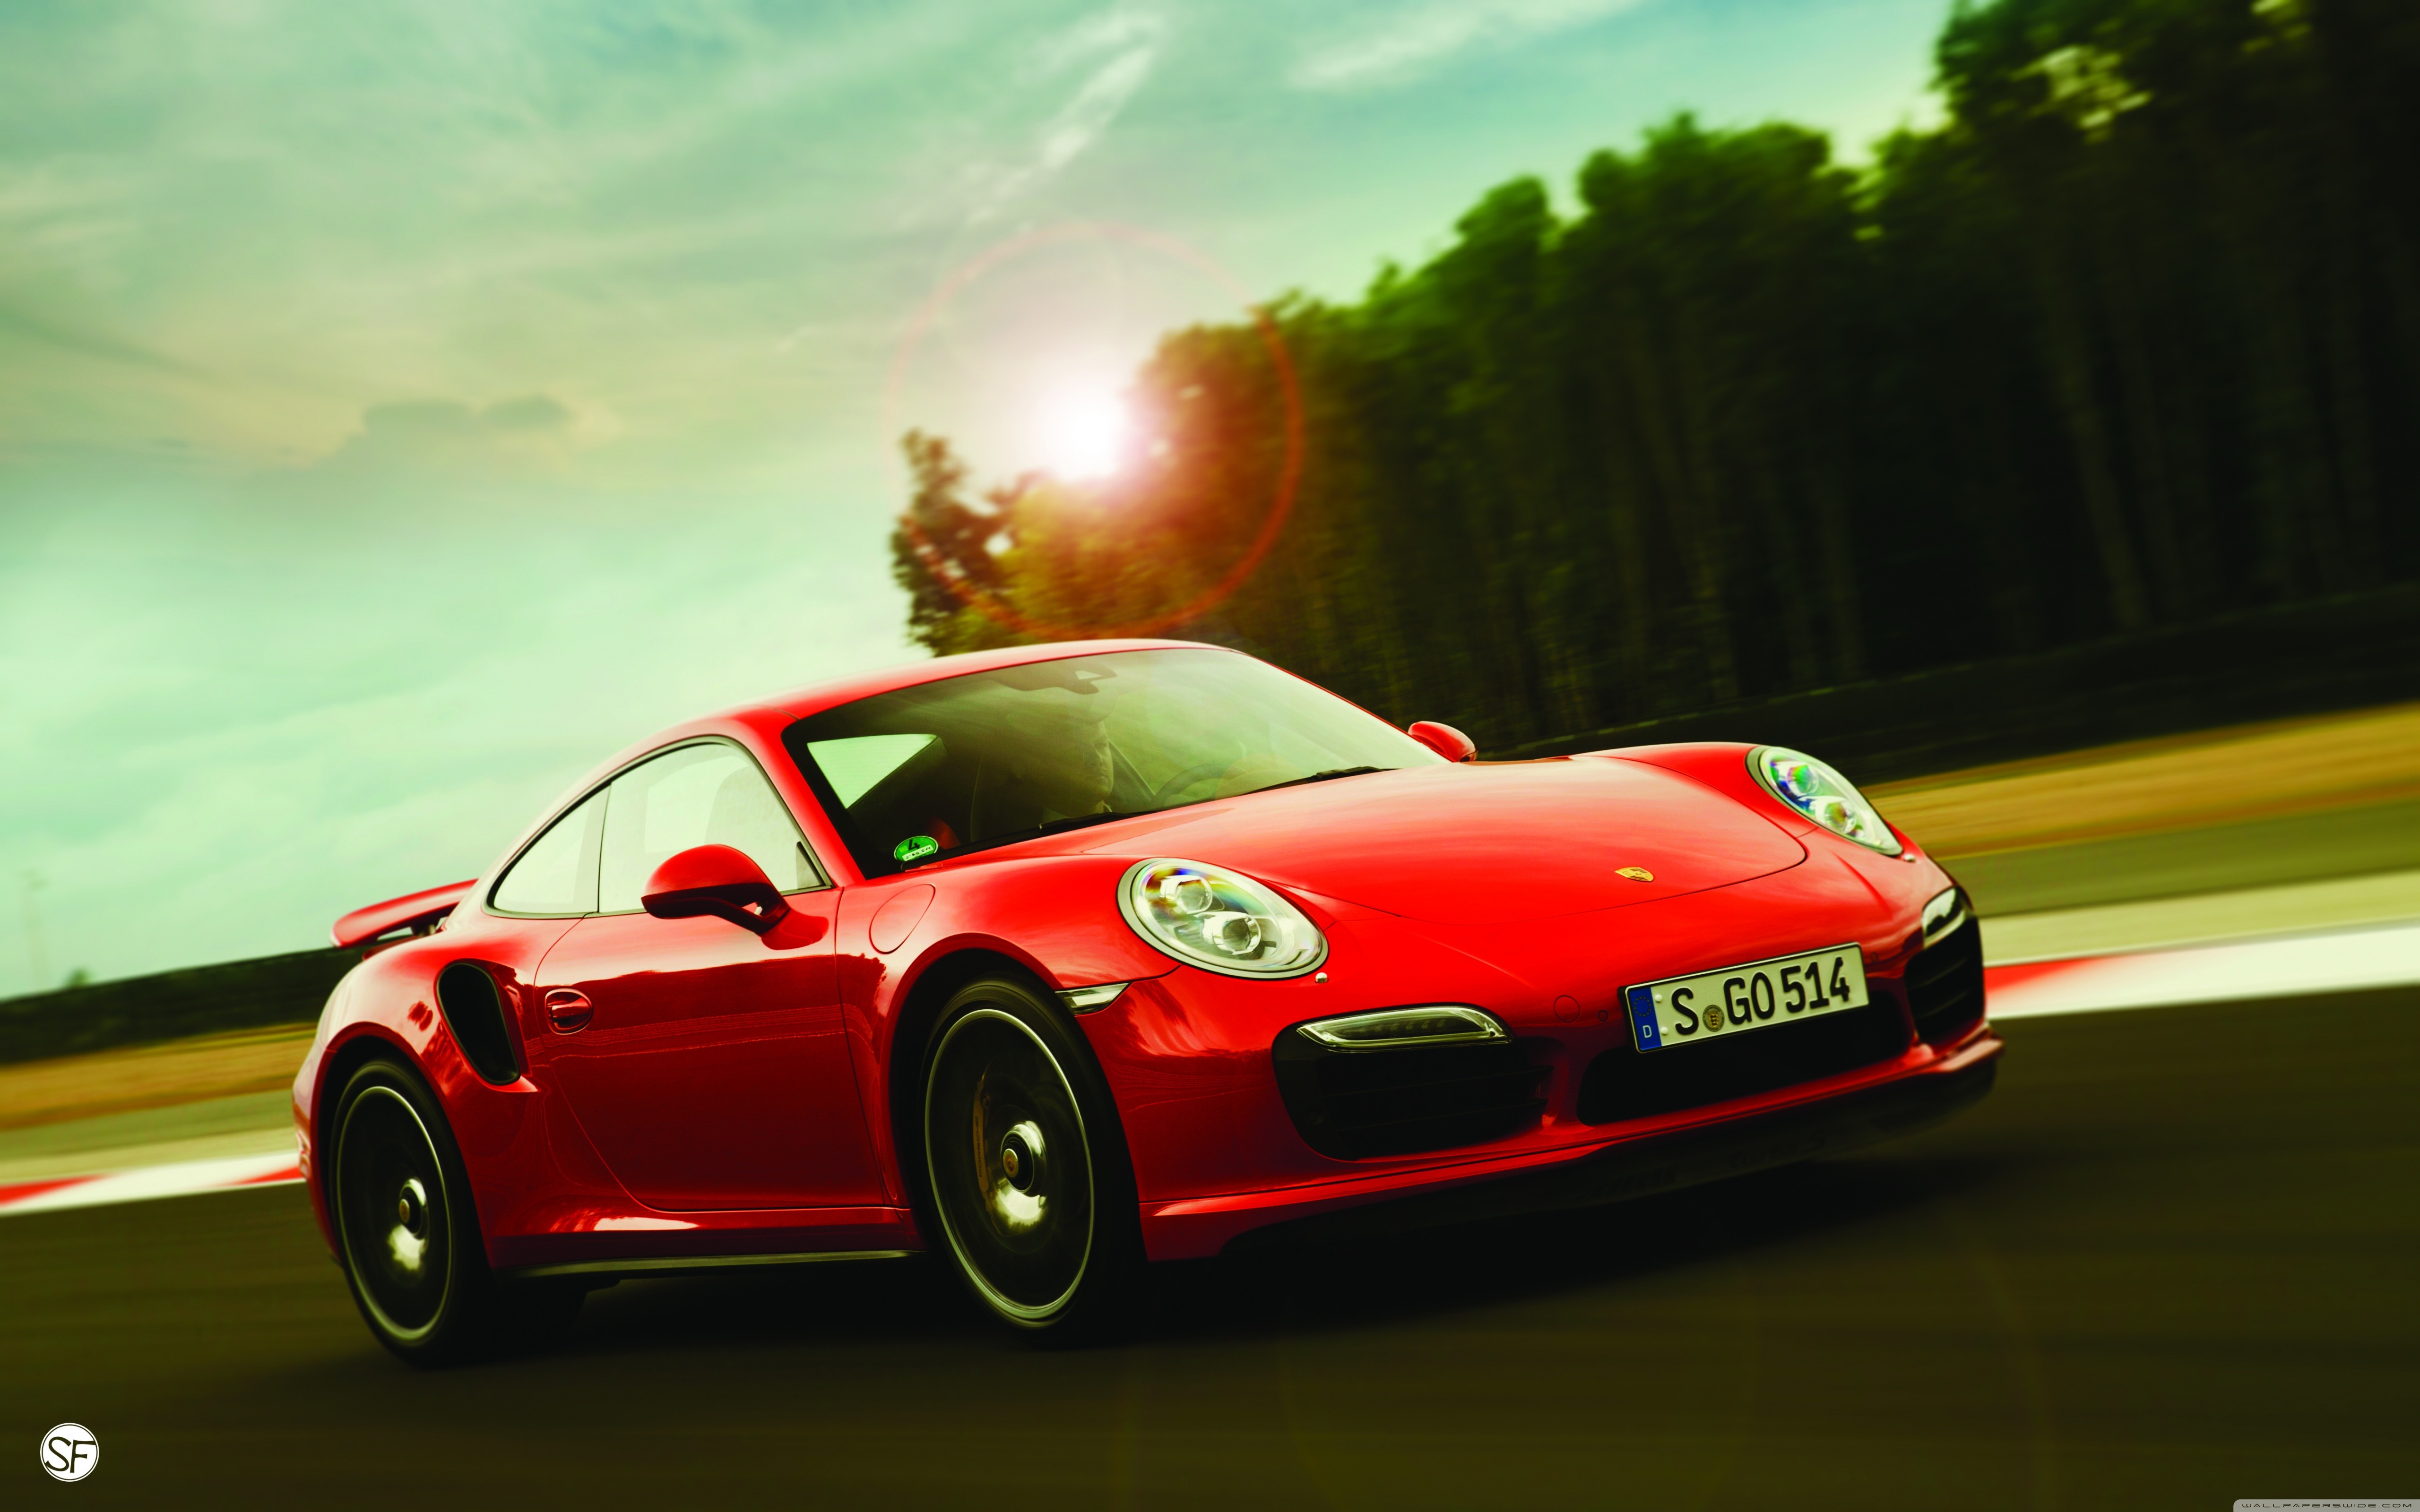 Porsche 911 Carrera S, Porsche 911, Car, Vehicle, Red cars Wallpaper